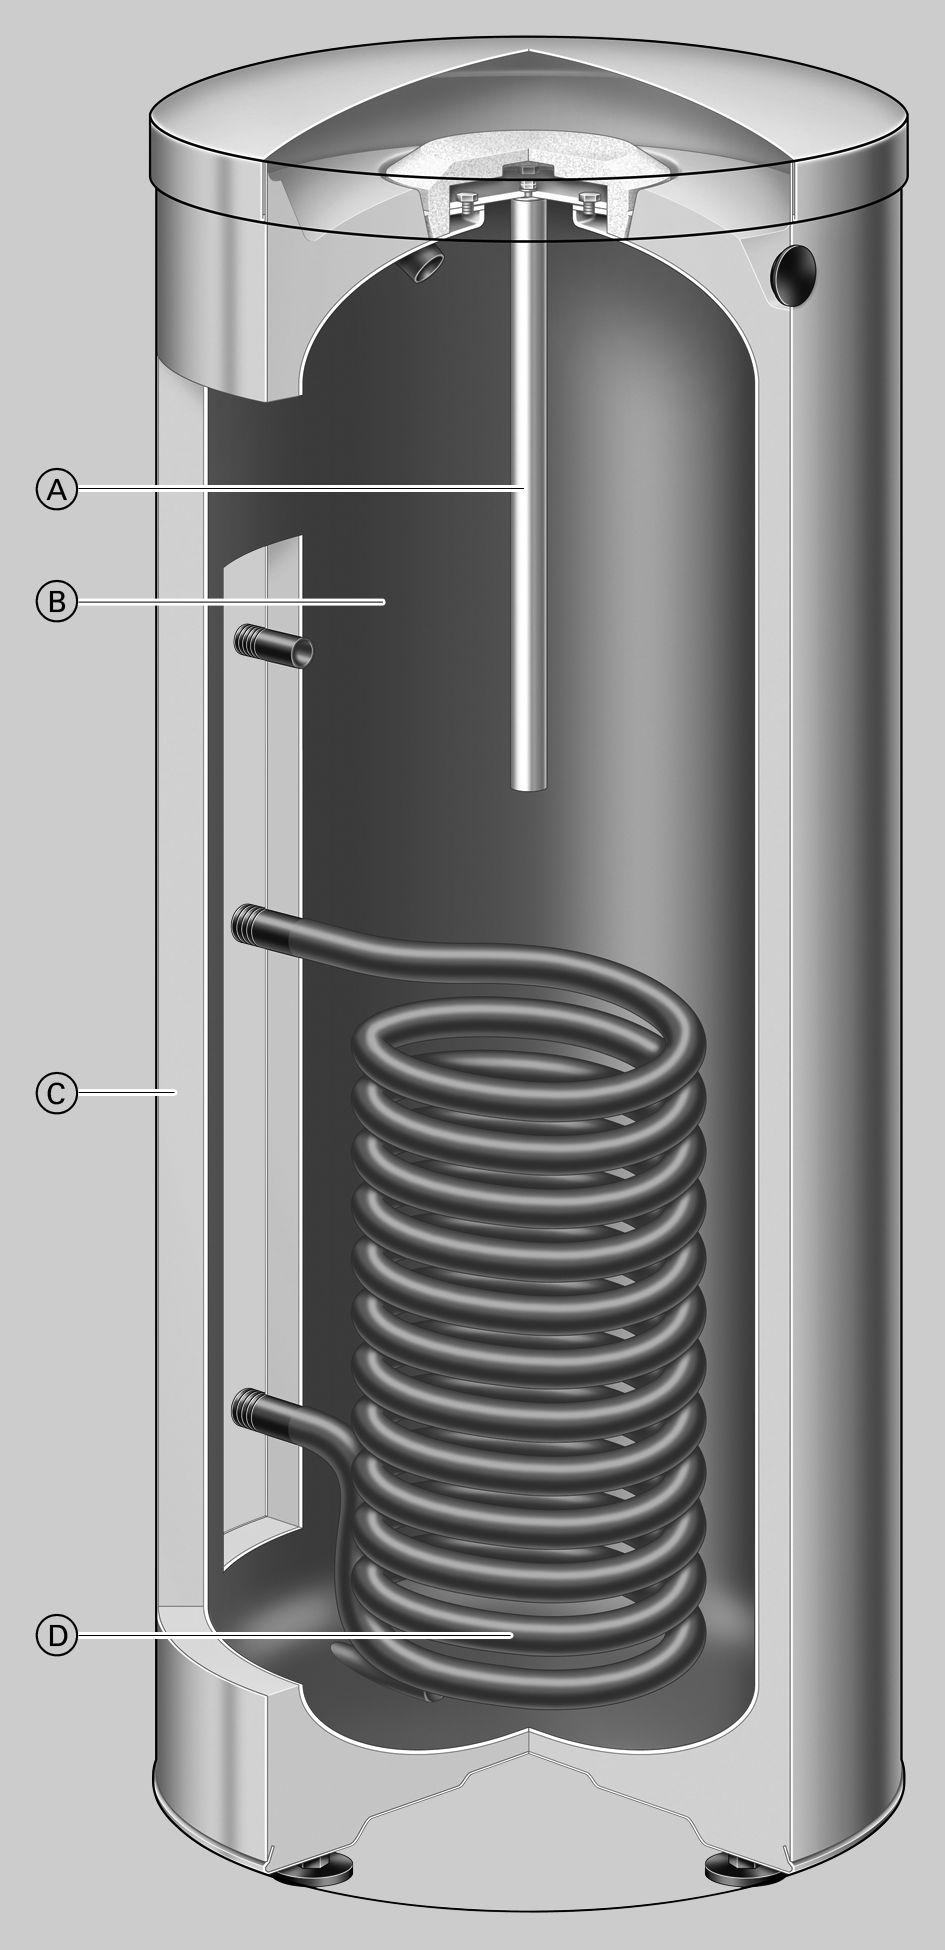 Descrição do produto A solução "racional" para a produção económica de água quente sanitária. O Vitocell 100-V está disponível na versão vertical com capacidade até 950 litros de volume de água.